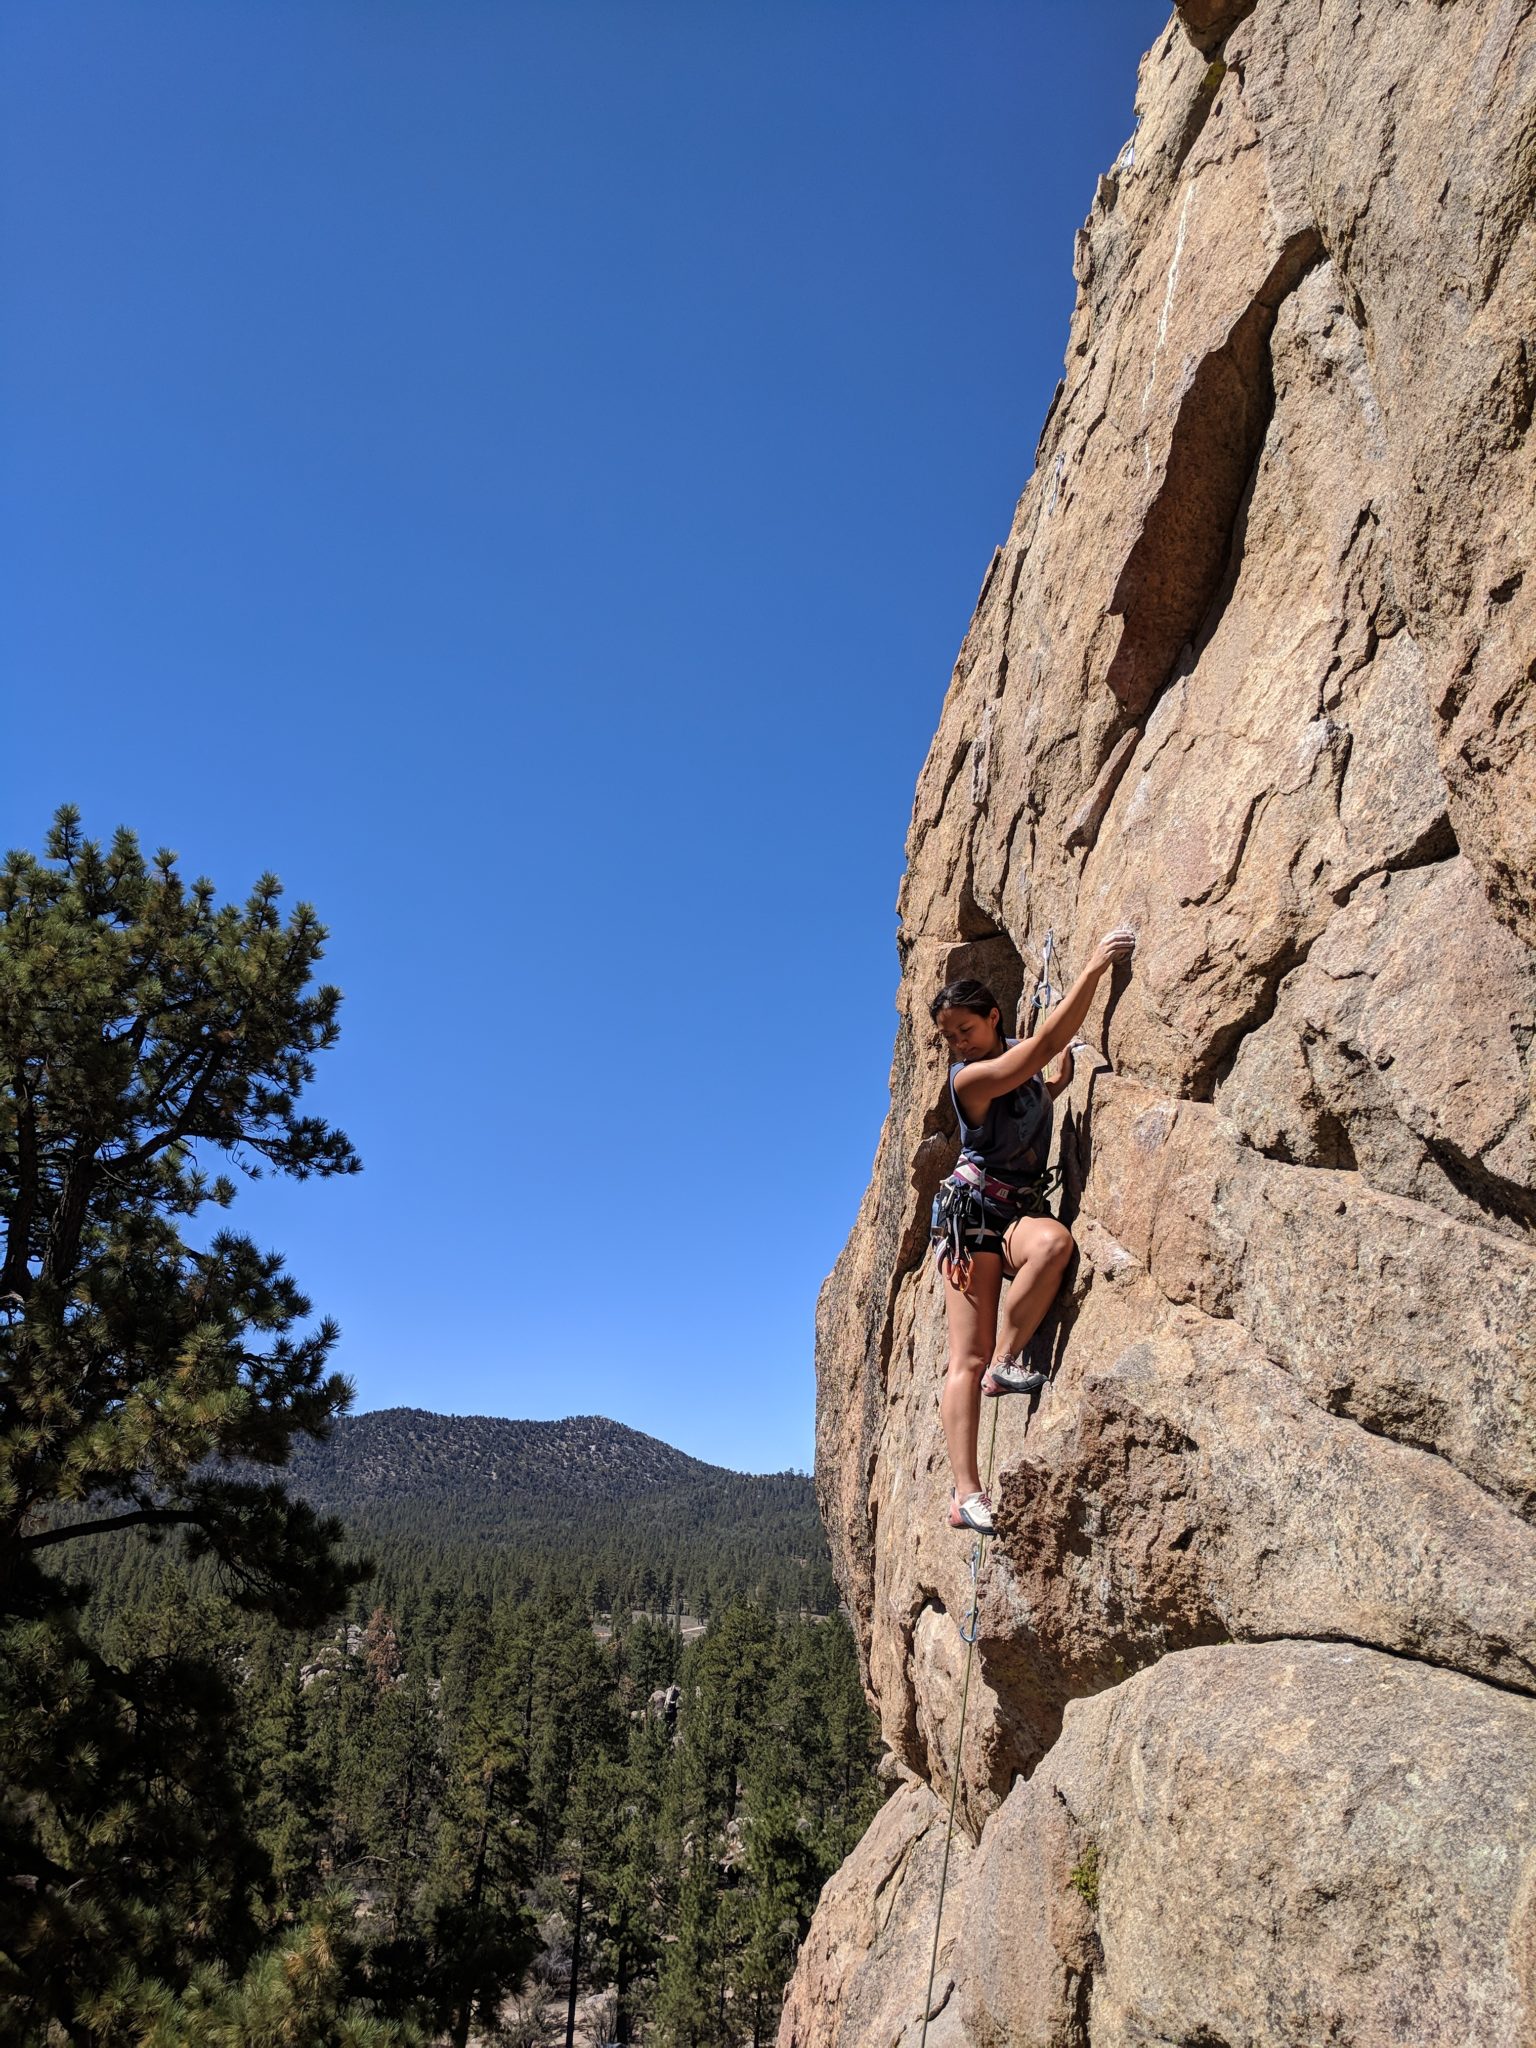 Jaylene Rock Climbing